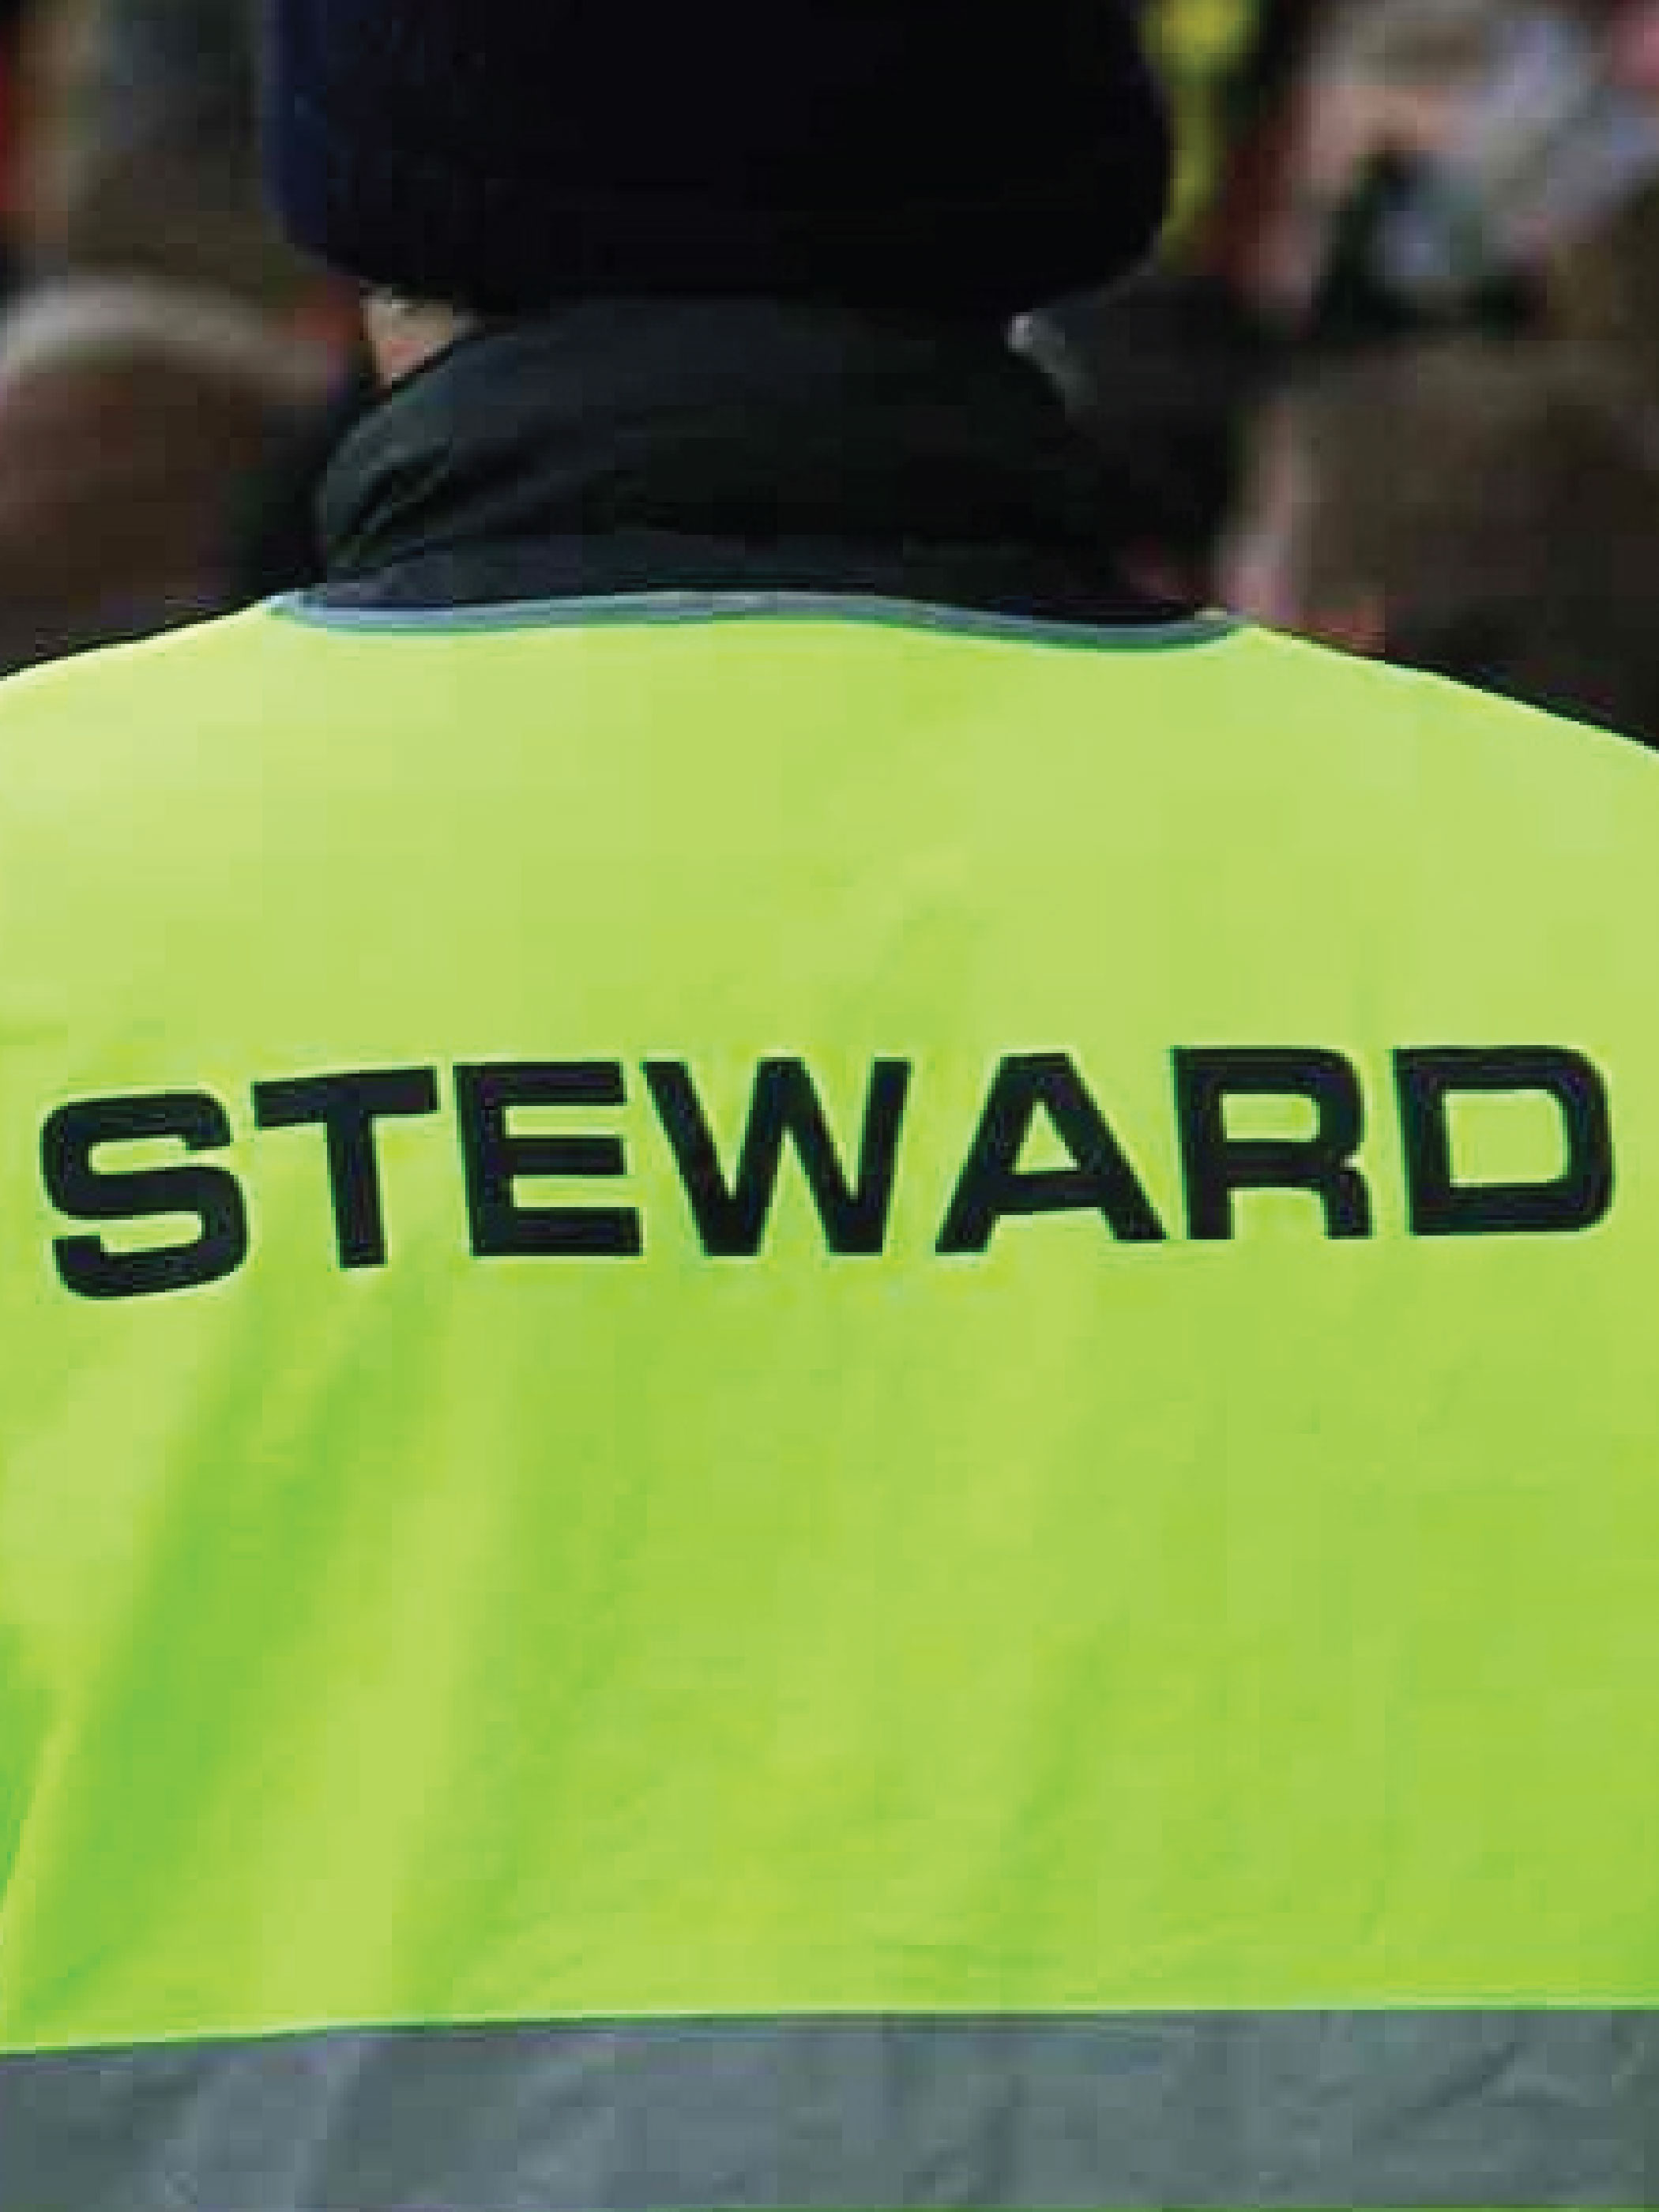  Steward